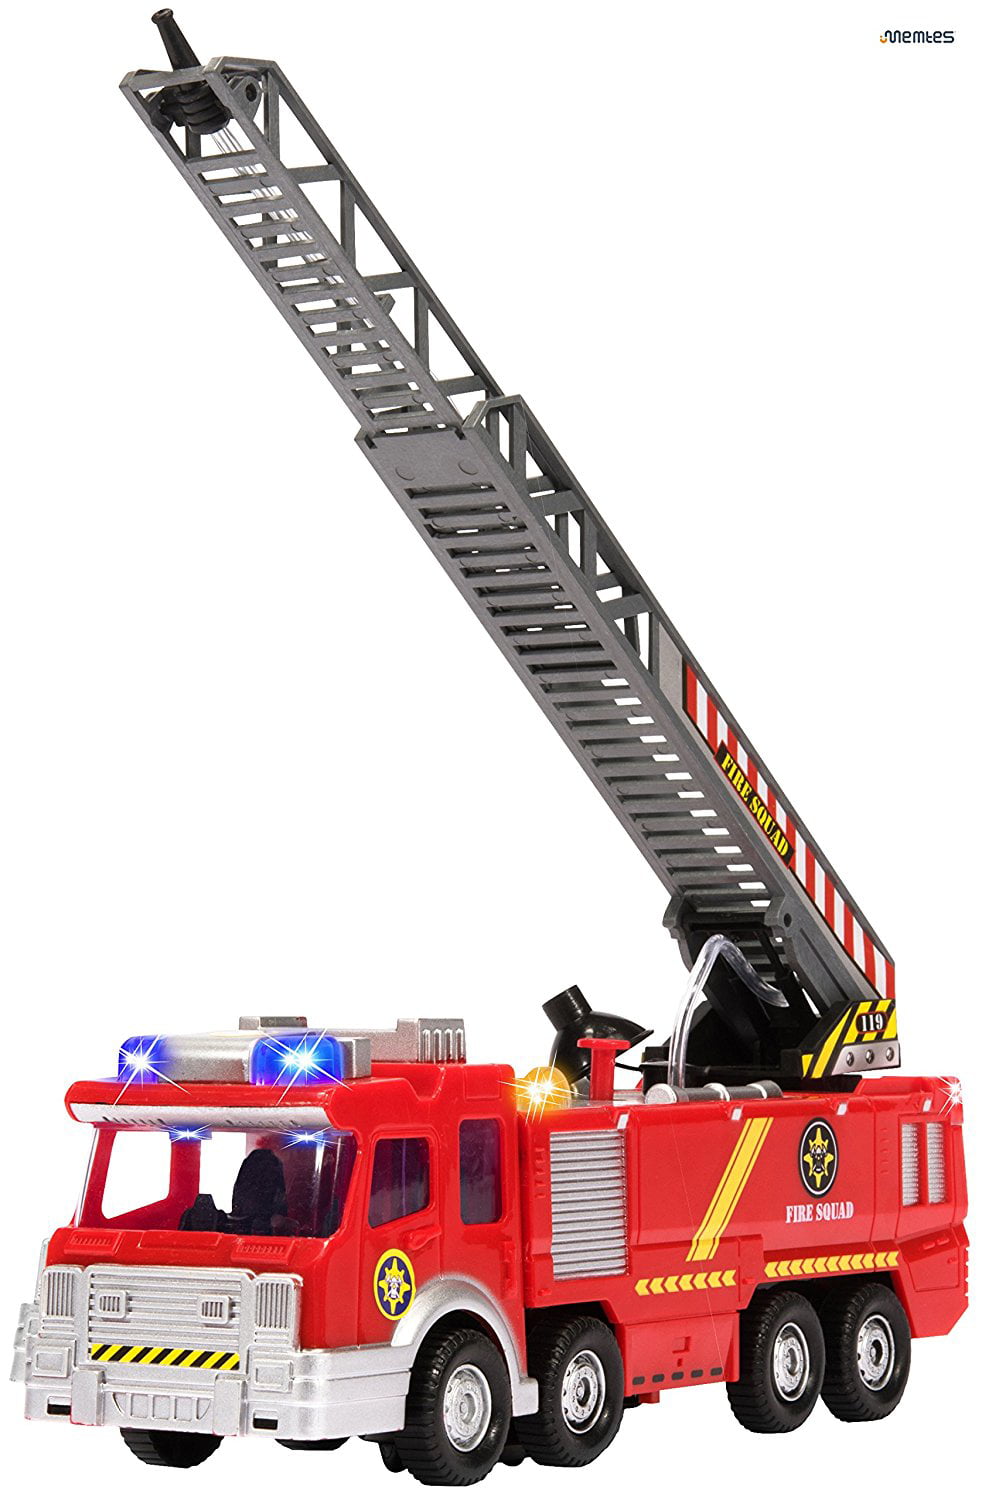 Electric Fire truck jouet spray eau de simulation camion jouets compact musique